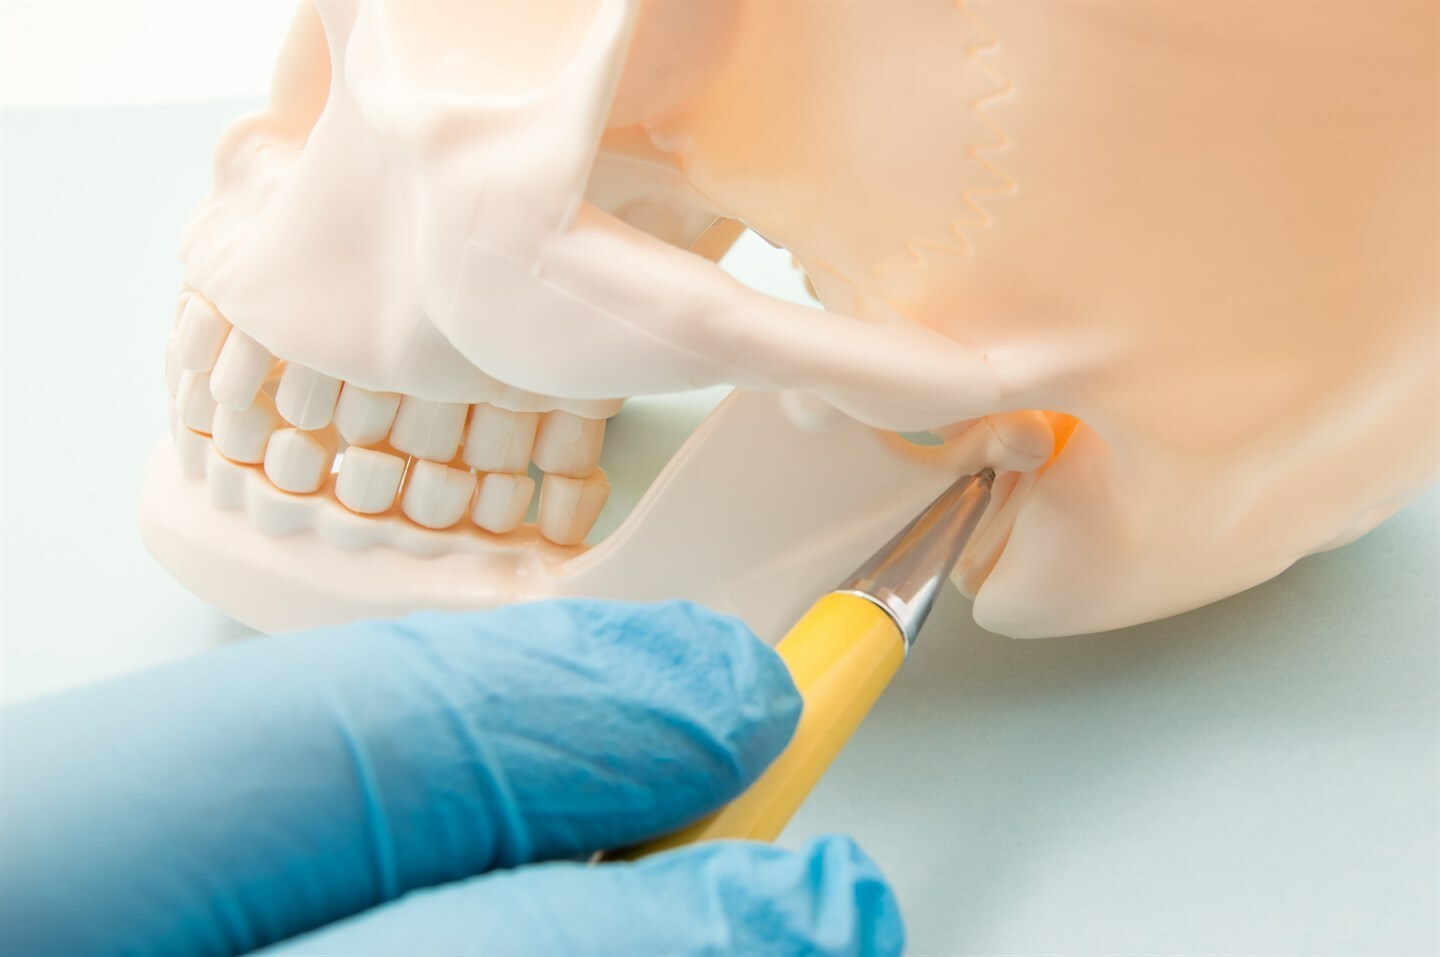 Отстроченная реплантация зуба после вывиха как причина полной резорбции